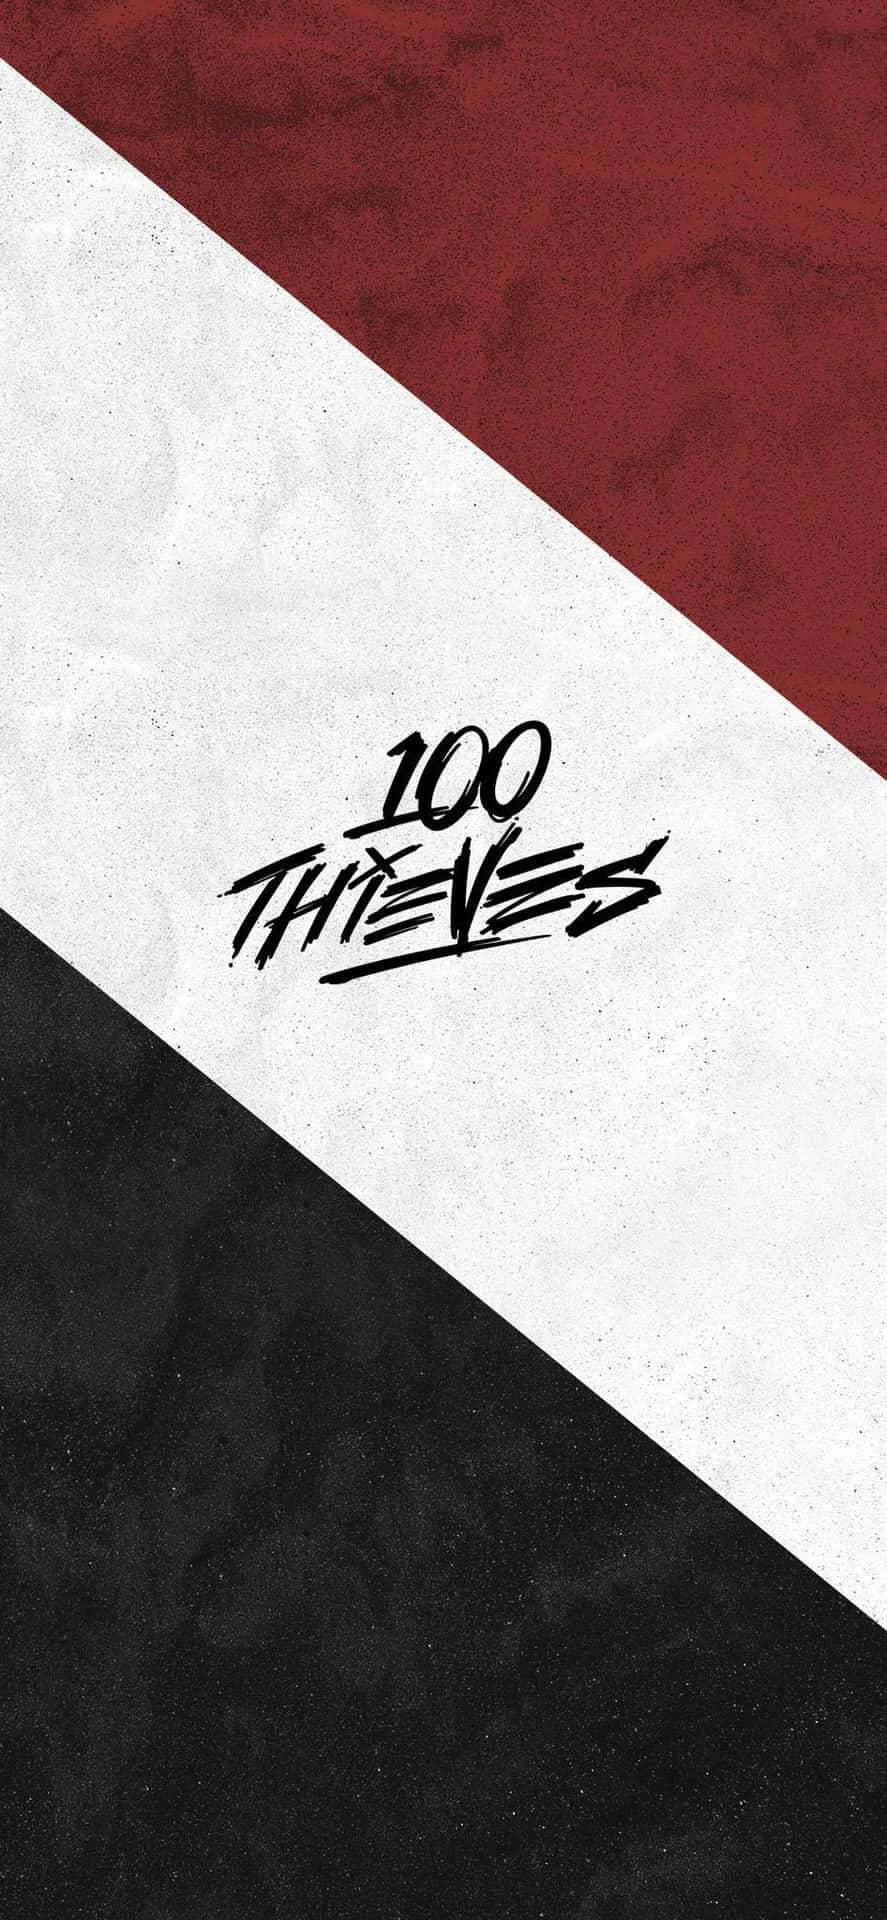 100 Thieves blev grundlagt i 2017 og er et verdensberømt e-sport og livsstilsmærke. Wallpaper